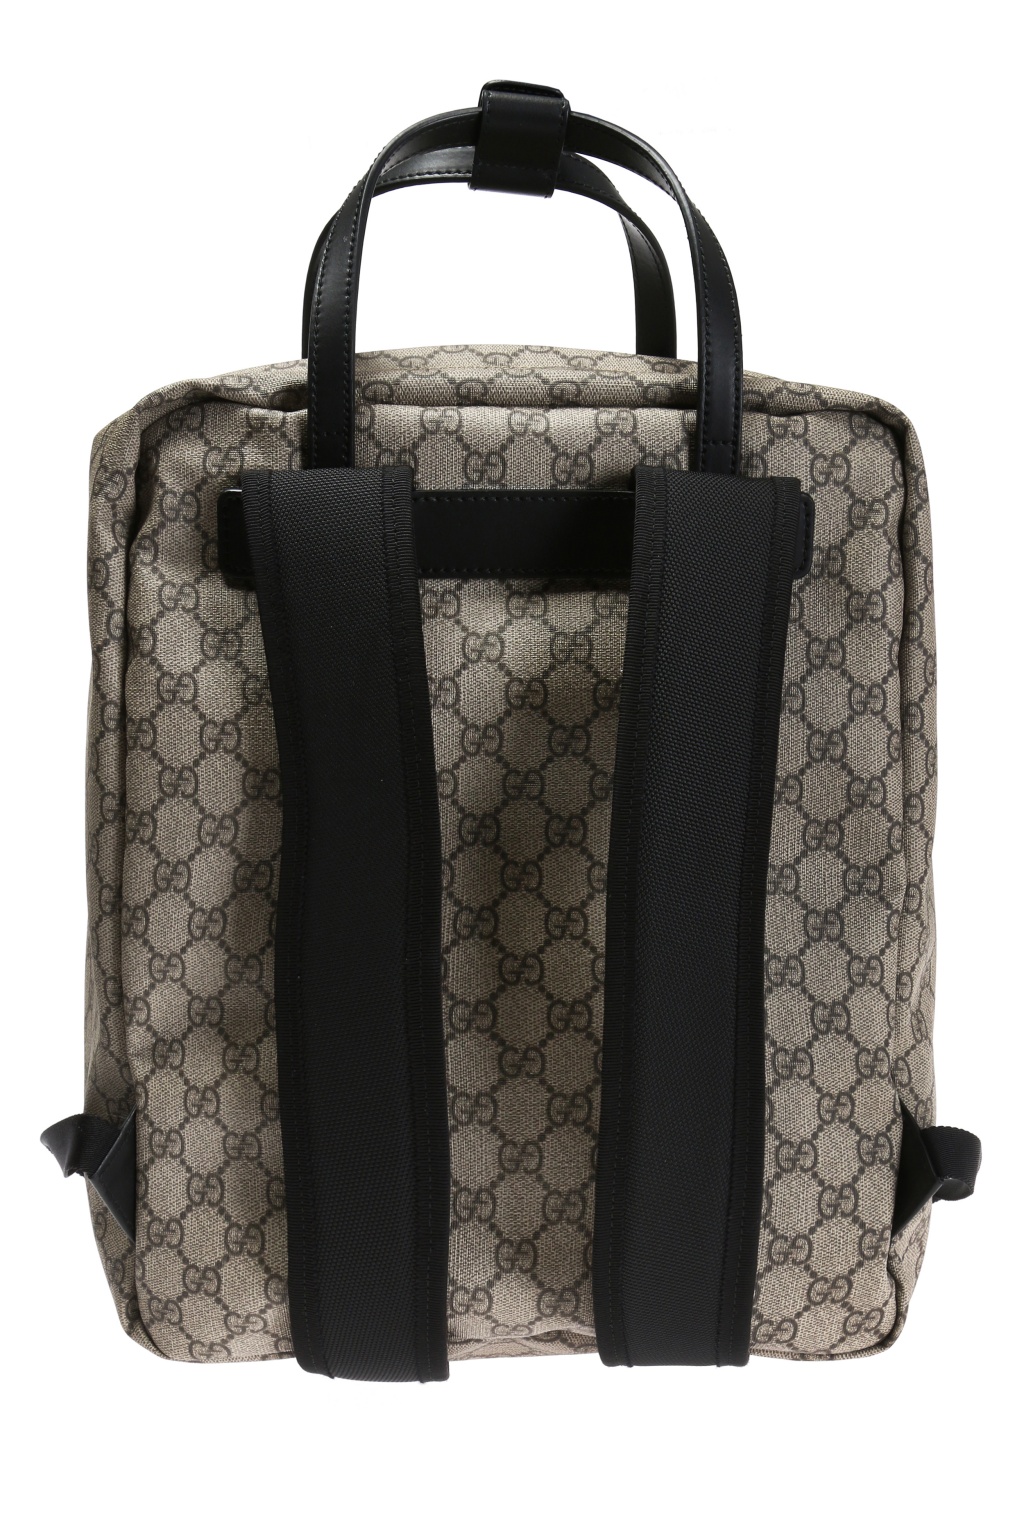 Gucci Ophidia Black Shoulder Bag : r/DHgate